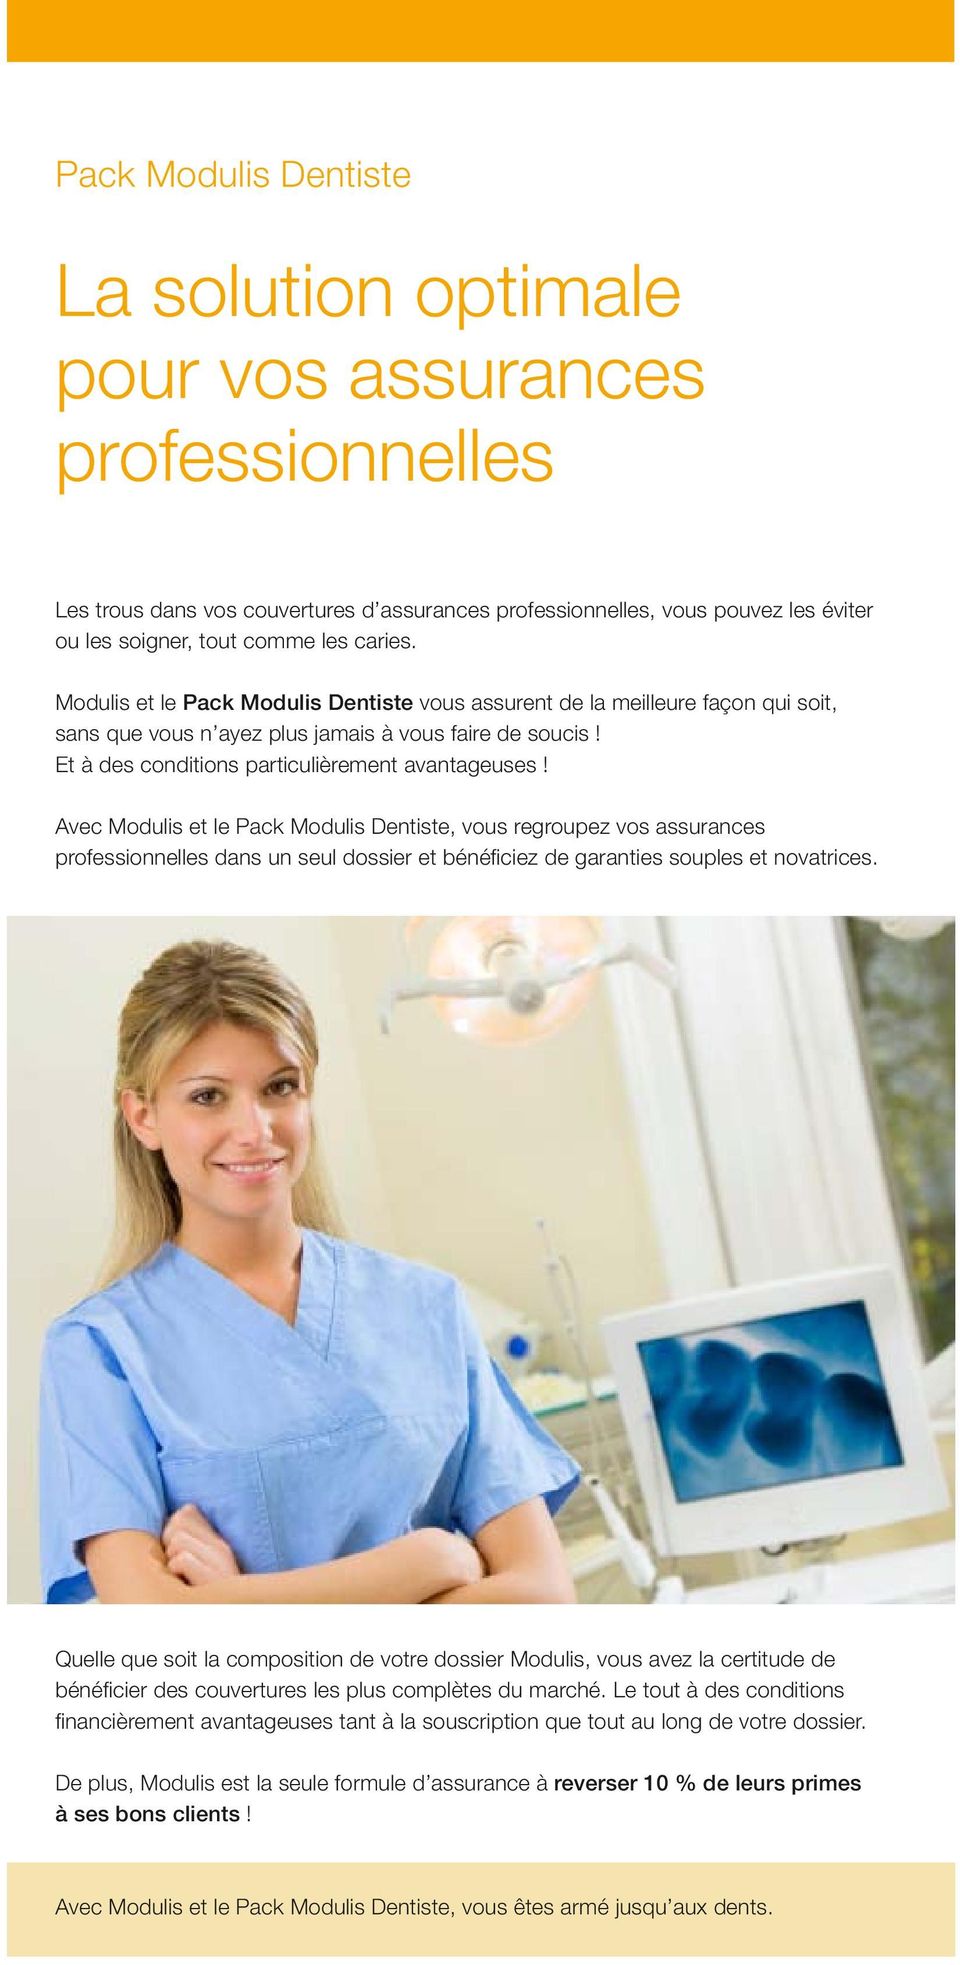 Avec Modulis et le Pack Modulis Dentiste, vous regroupez vos assurances professionnelles dans un seul dossier et bénéfi ciez de garanties souples et novatrices.